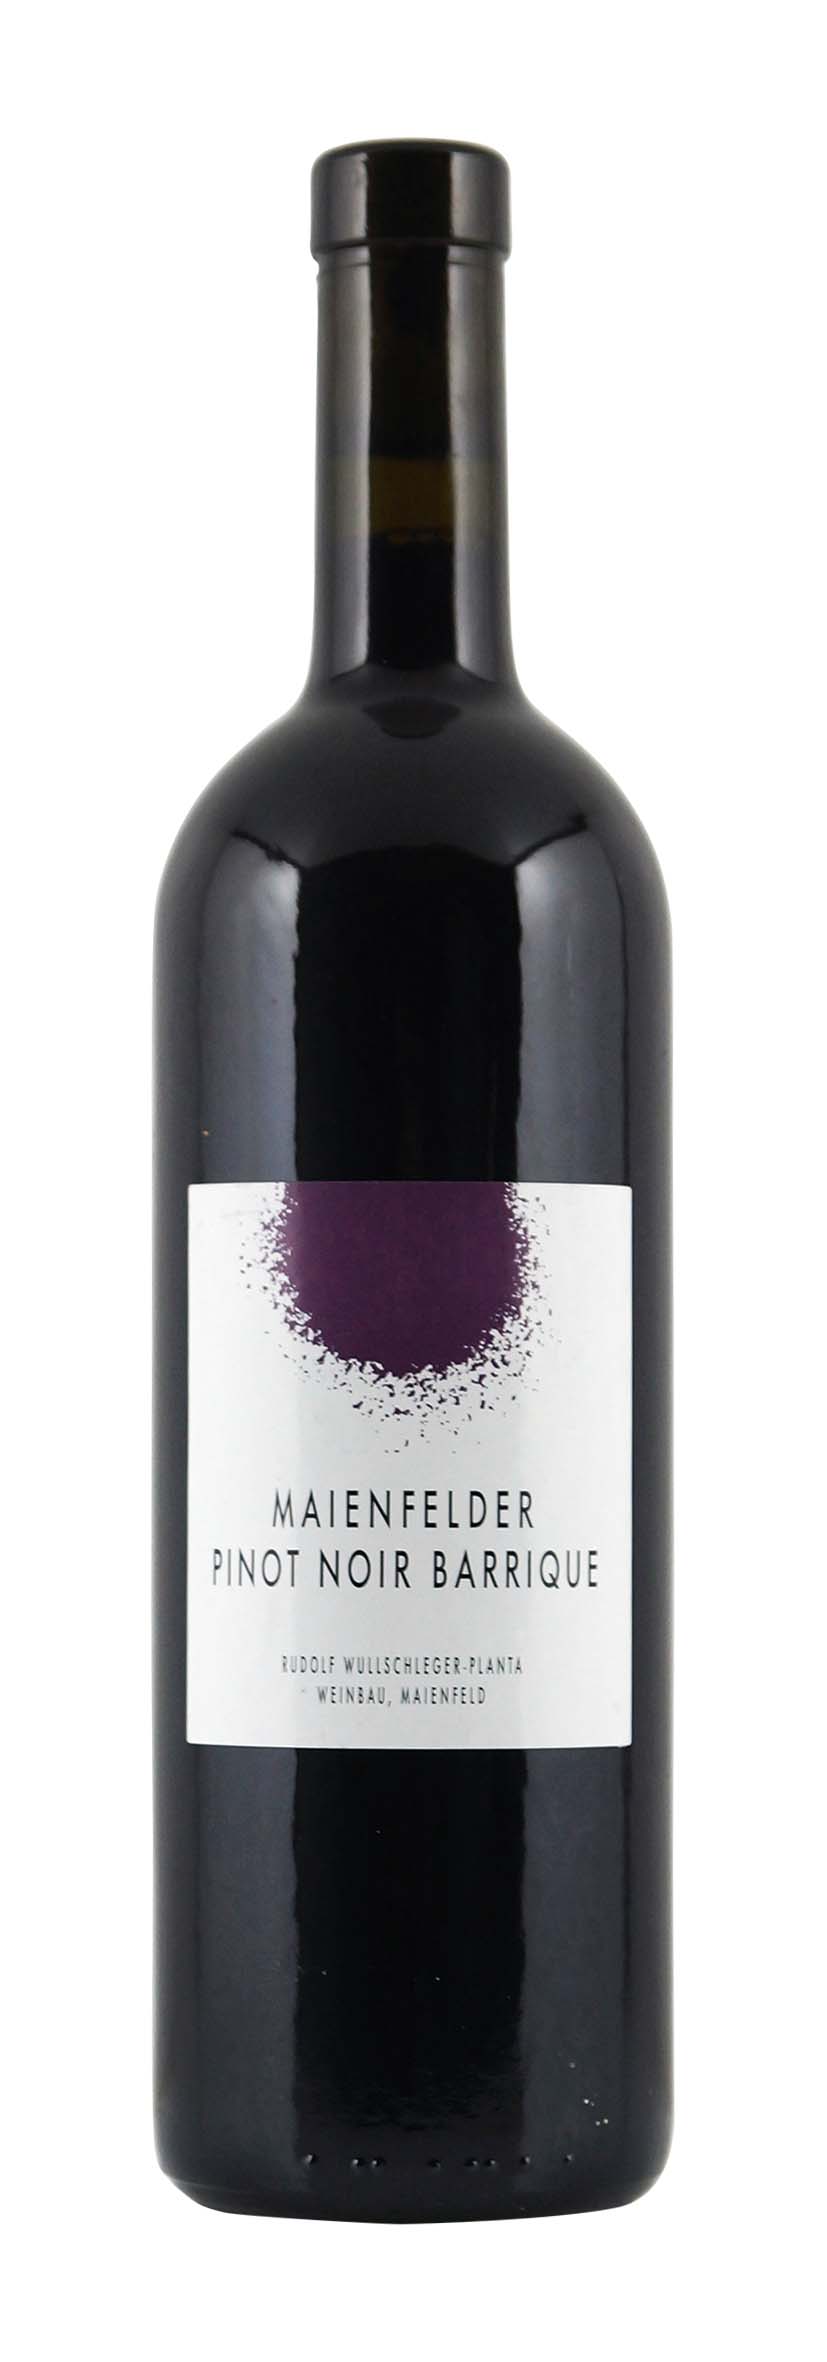 Graubünden AOC Maienfelder Pinot Noir Barrique 2008